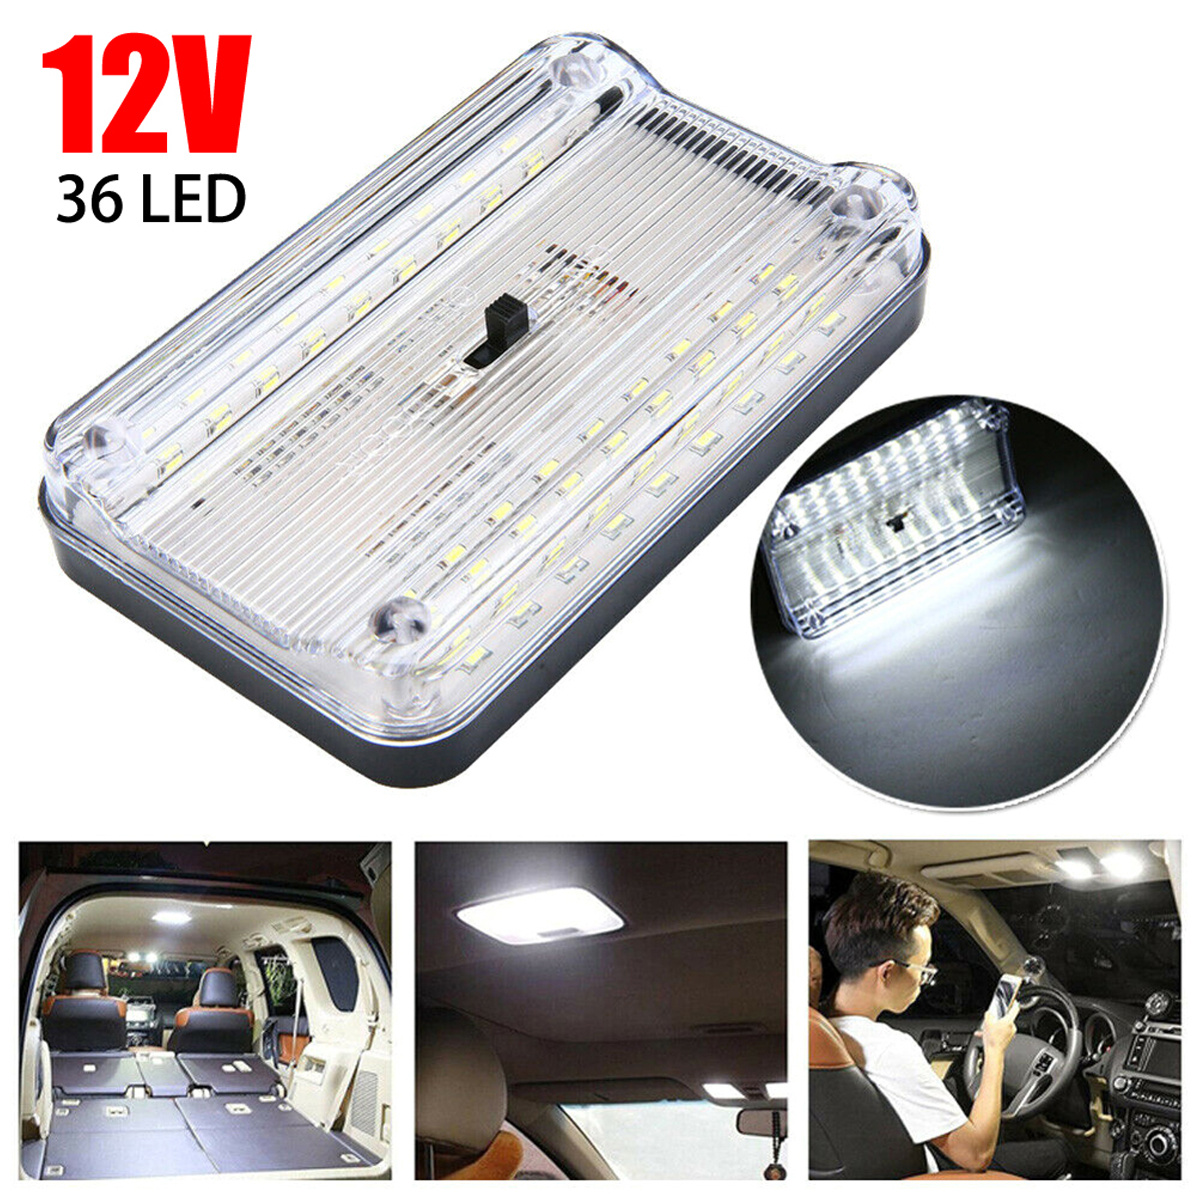 12V LED Interior Lights Roof Ceiling Light for RV Camper Trailer Motorhome  Van LED Ceiling Lamps Wholesales CSV Car Lights - AliExpress